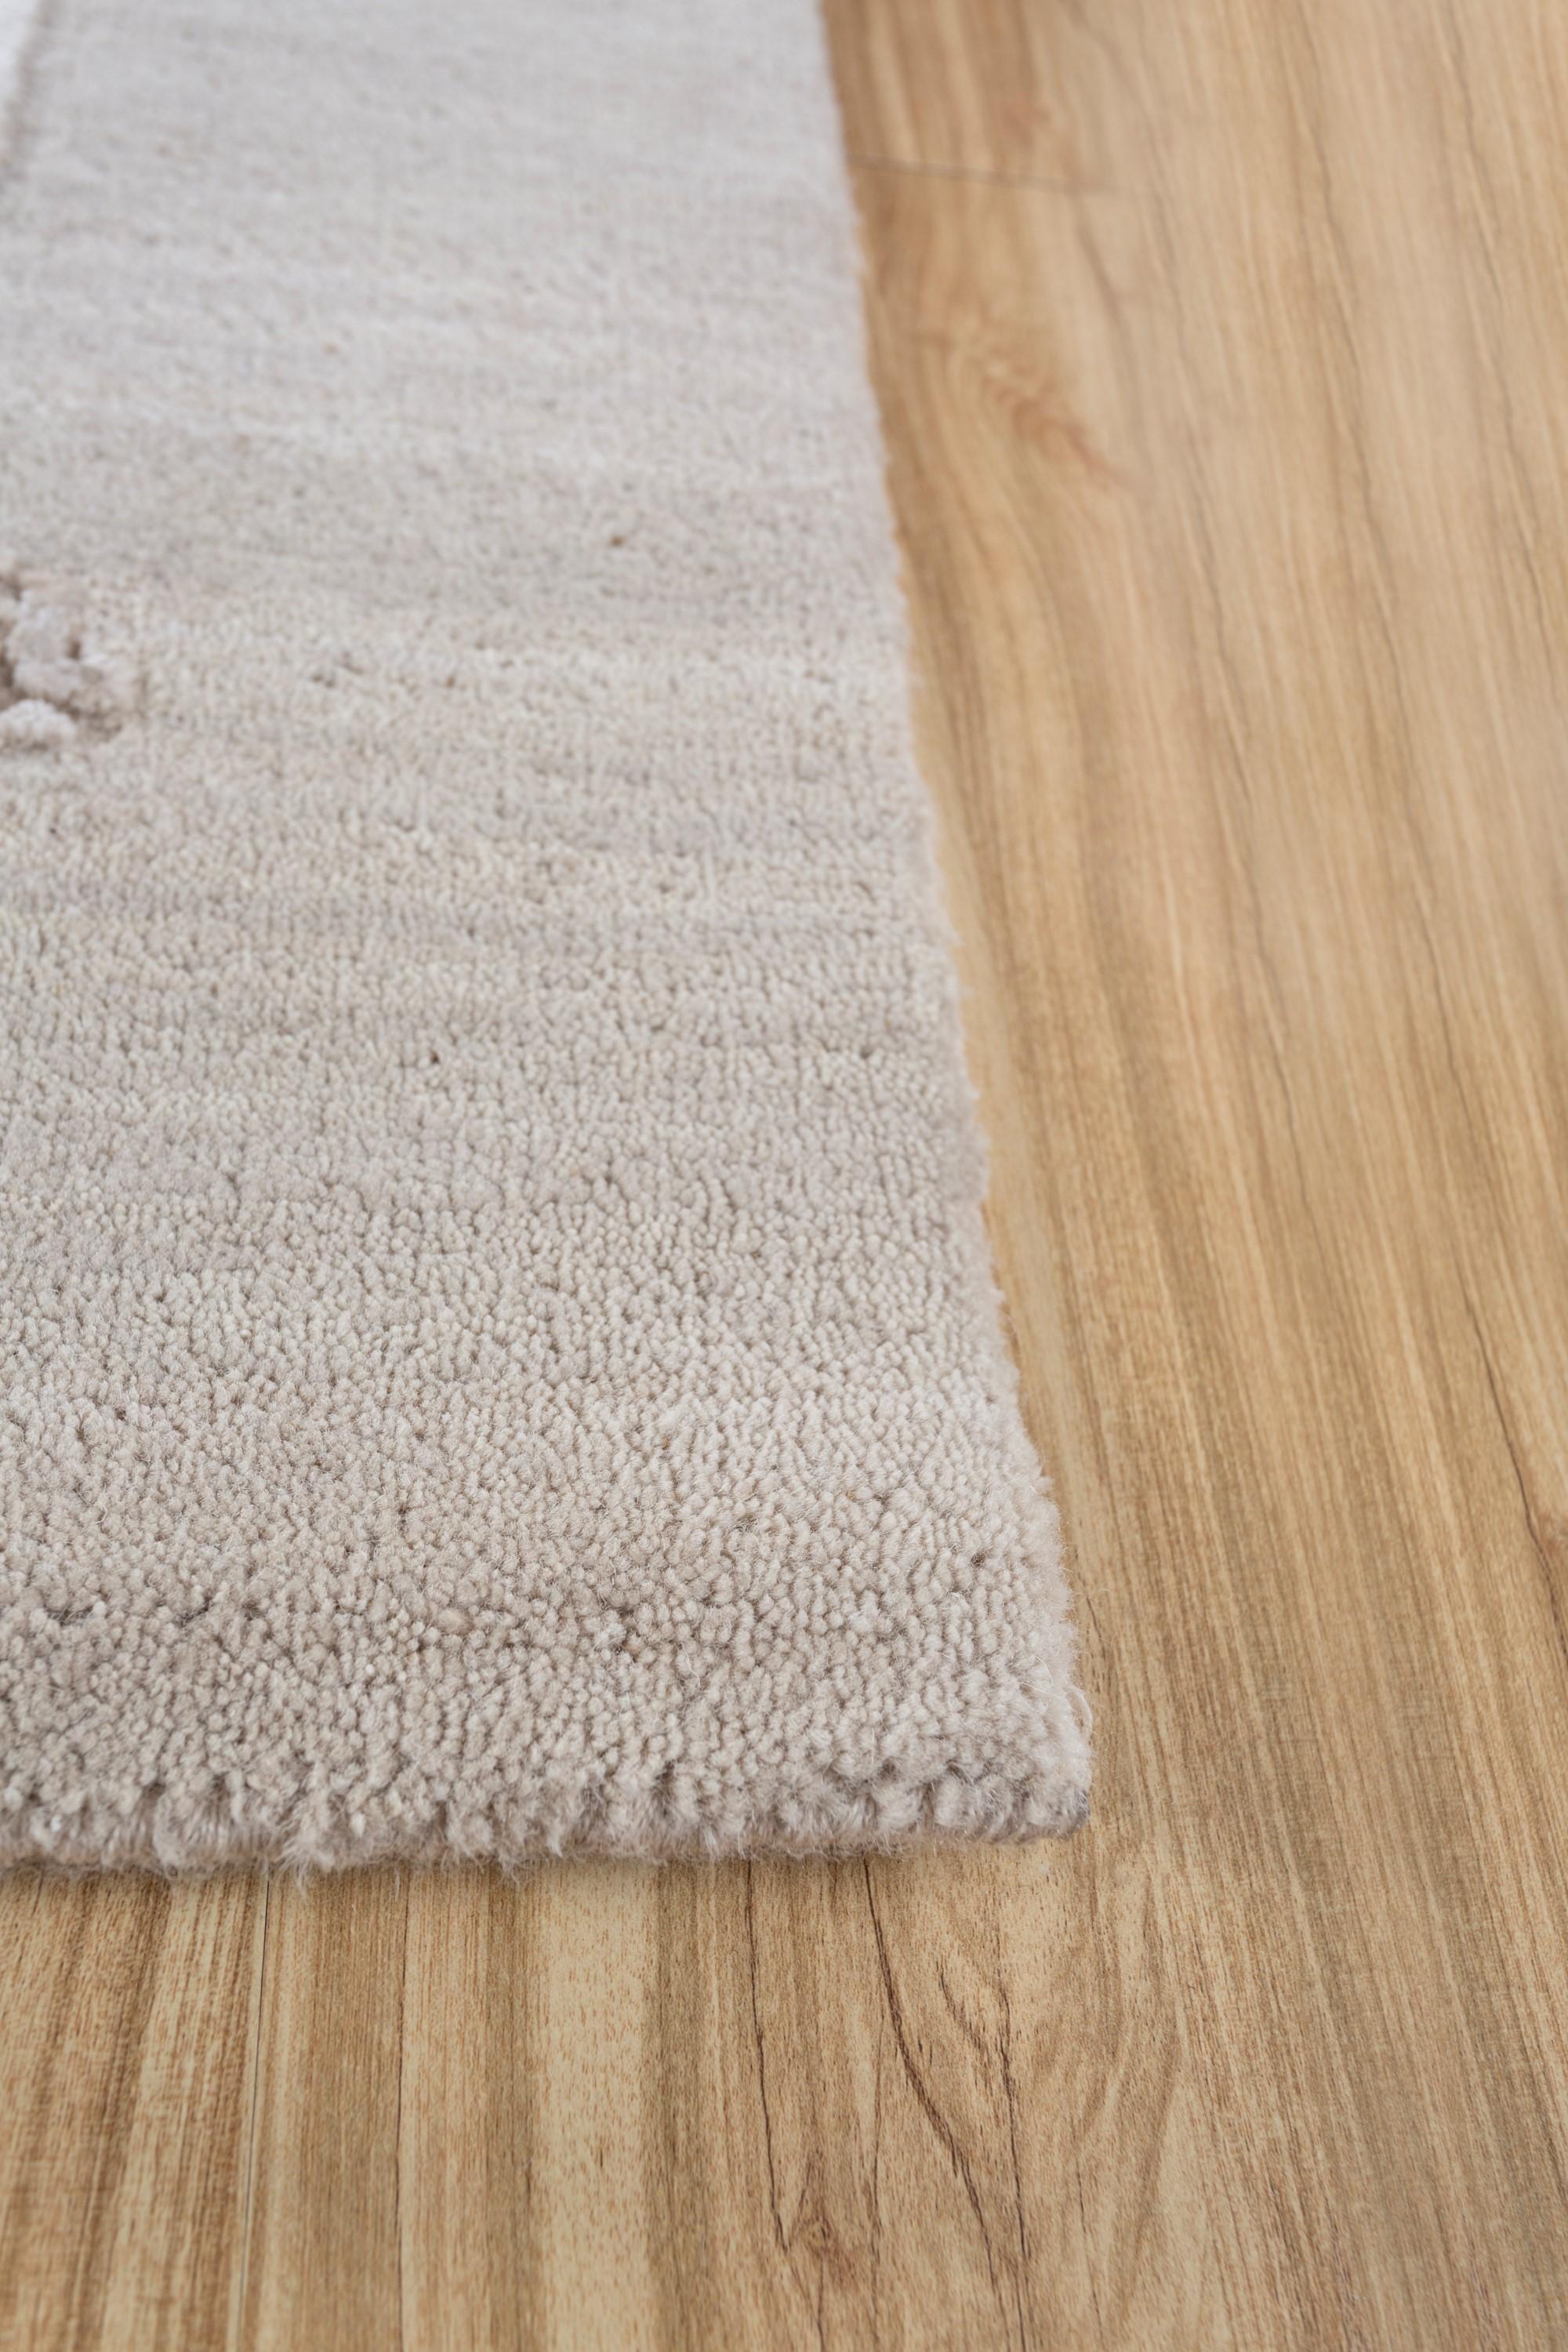 Whiting en blanc antique et sable blanc, ce tapis raconte une histoire à l'allure intemporelle. Noué à la main avec le luxe de la laine et de la soie de bambou, ce tapis reflète l'inspiration de l'artiste tirée du jeu de la lumière sur le verre. Les